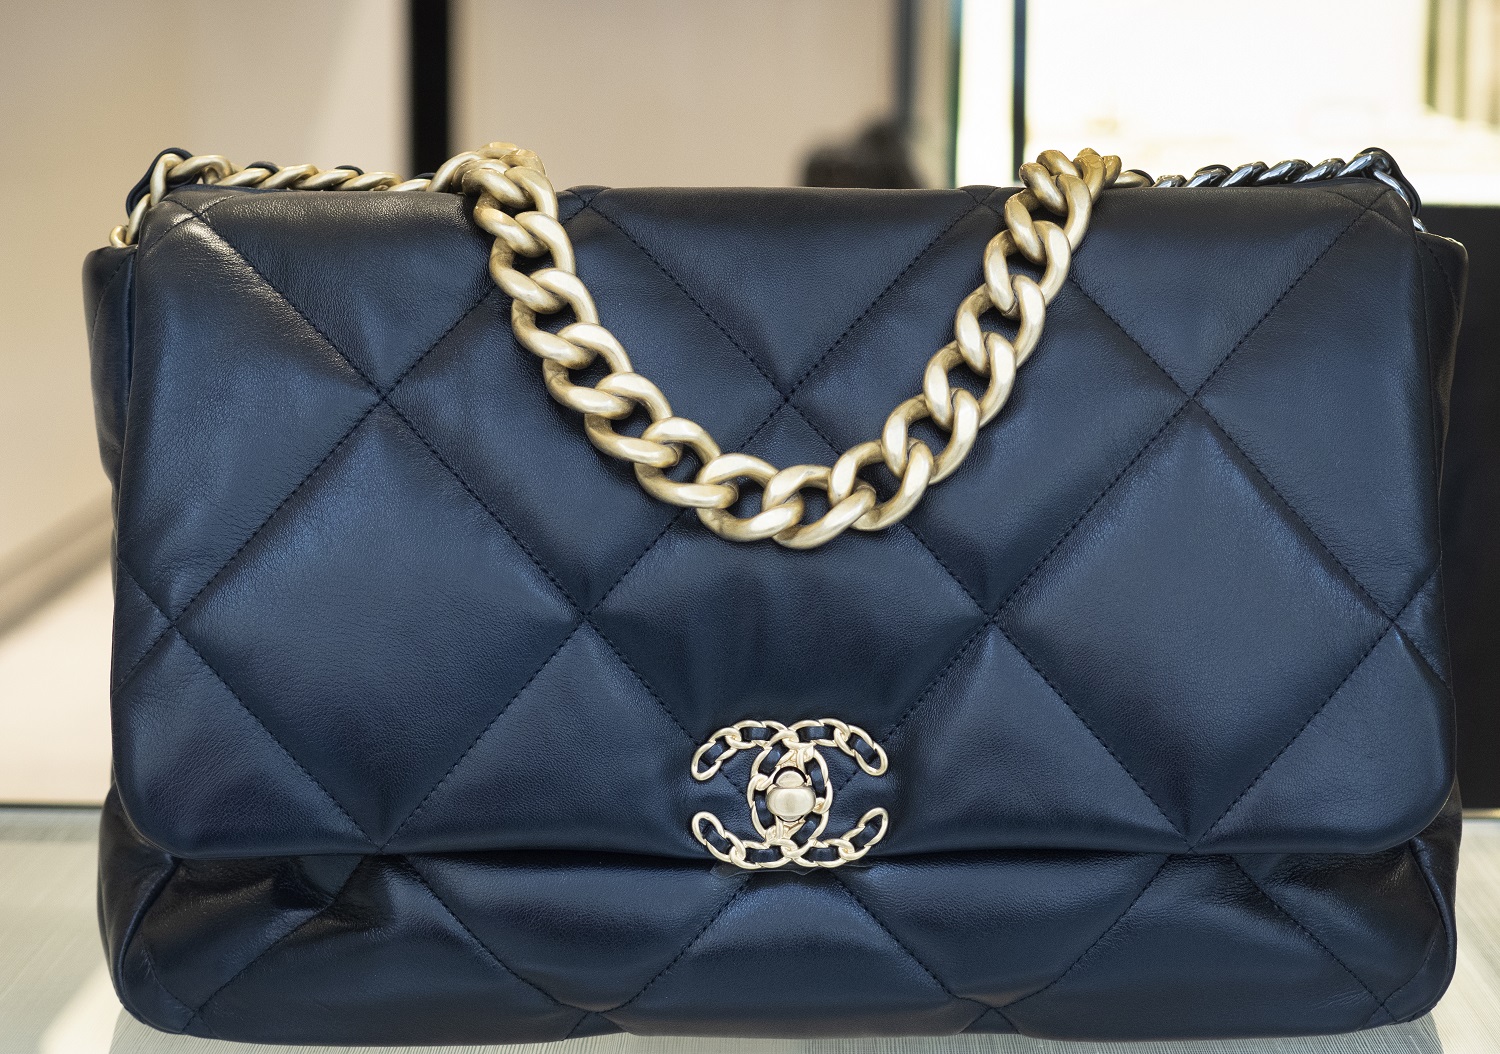 Pourquoi investir dans un sac Chanel   Cosmopolitanfr